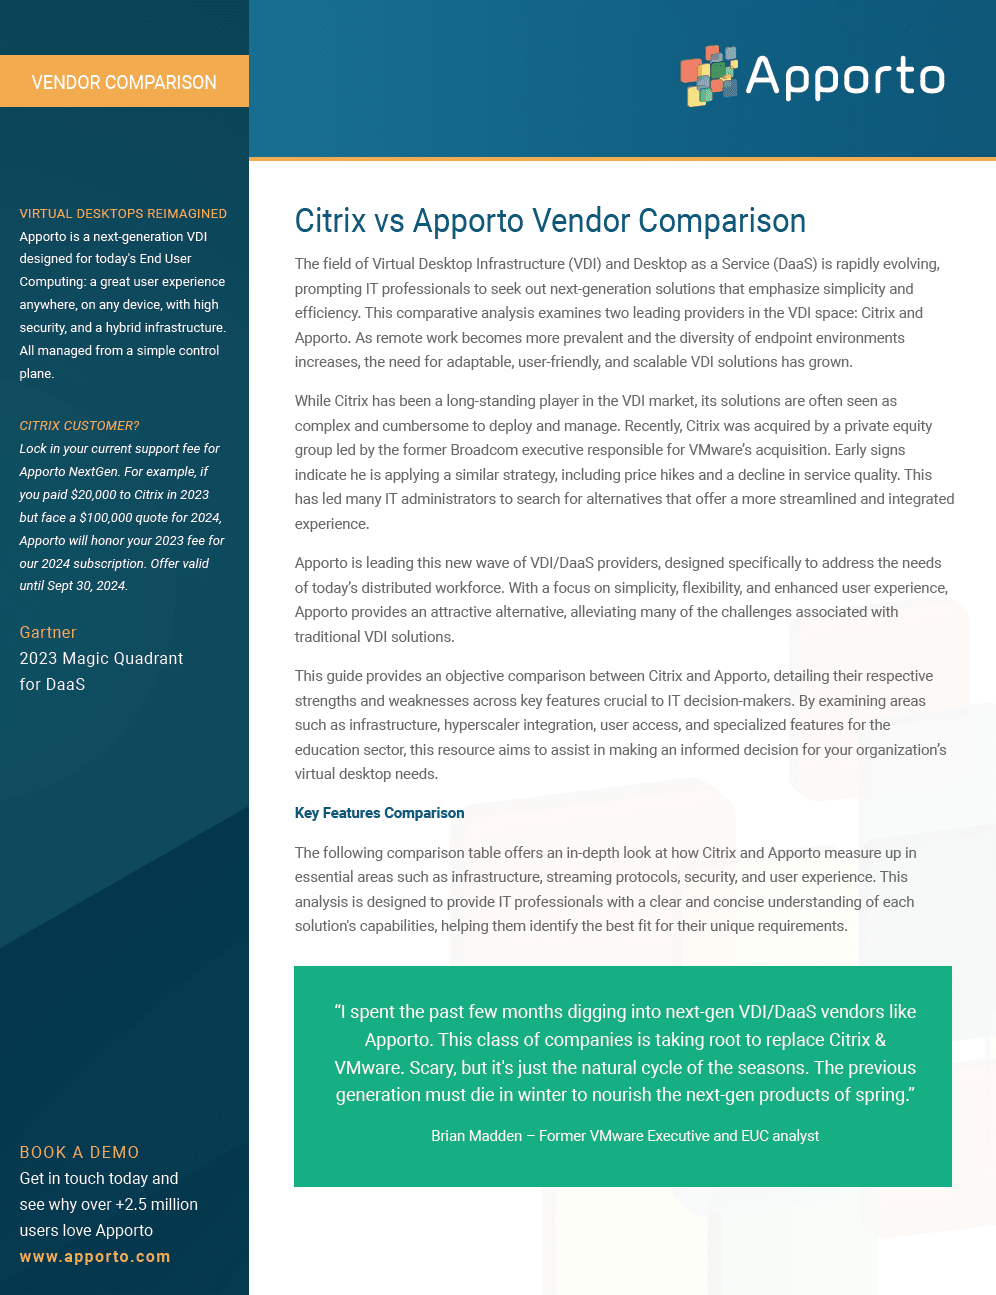 Apporto vs Citrix - Vendor Comparison